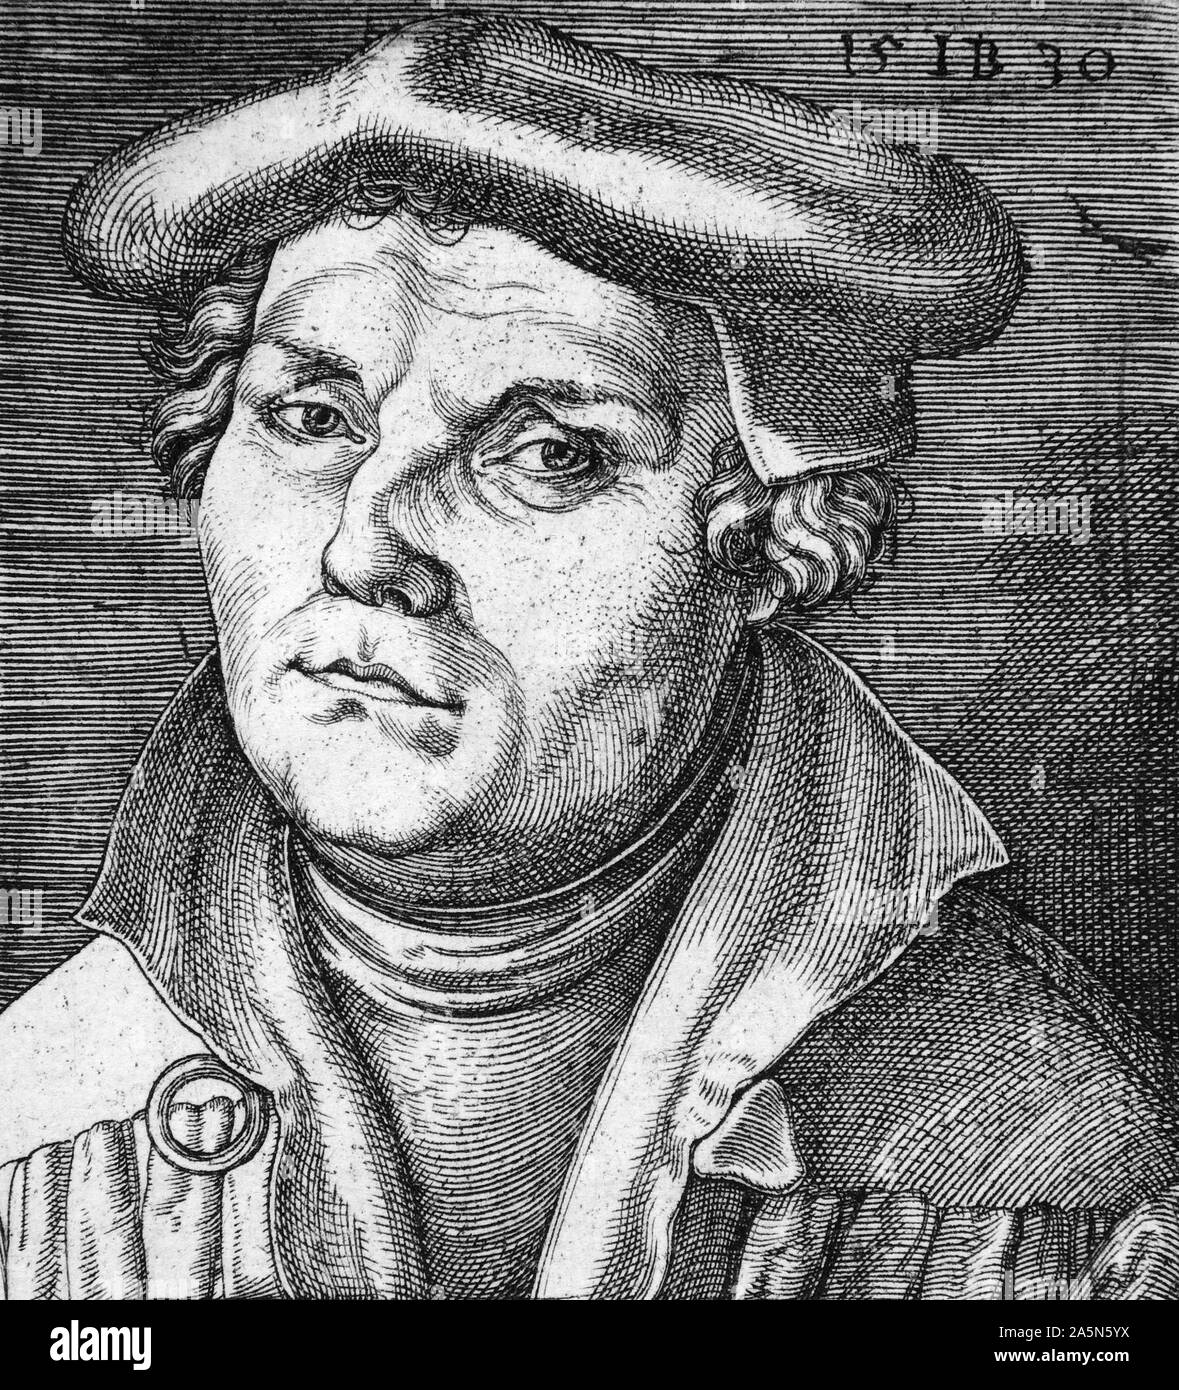 1530 Gravure de Martin Luther (1483-1546), le professeur allemand, théologien et figure clé de la Réforme protestante, ainsi qu'un traducteur de la Bible en langue vernaculaire allemand. Banque D'Images